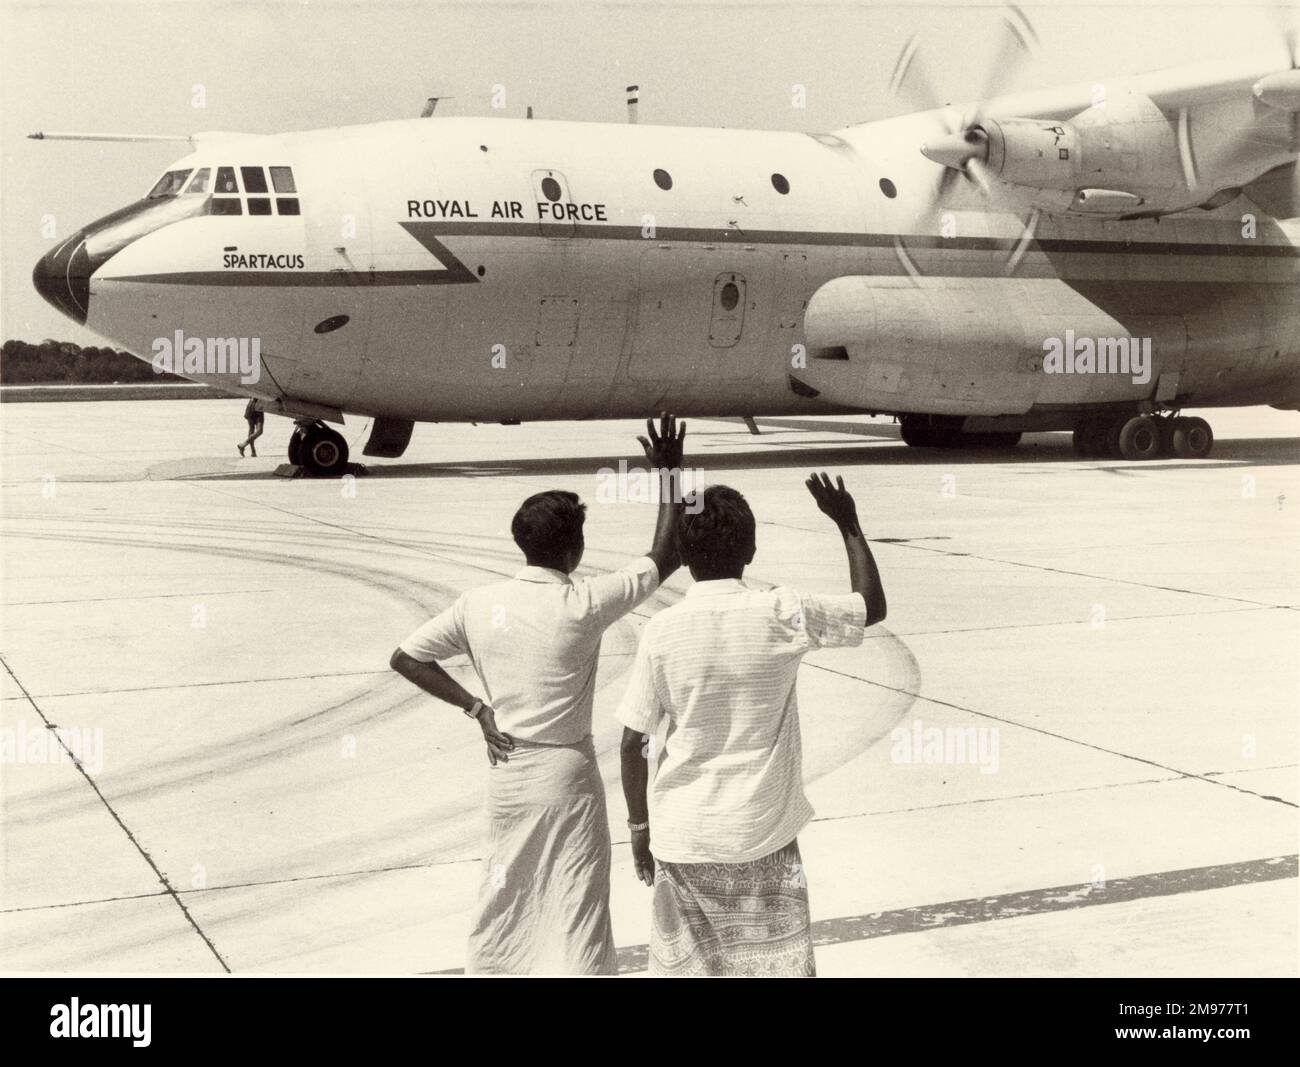 Die Malediven winken Auf Wiedersehen zum letzten Mal, als ein RAF Short SC-5 Belfast, XR369, Spartacus, sich auf den Abflug von der Insel Gan im Indischen Ozean vorbereitet. Der Flugplatz wurde der Republik Malediven am 29. März 1976 übergeben. Stockfoto